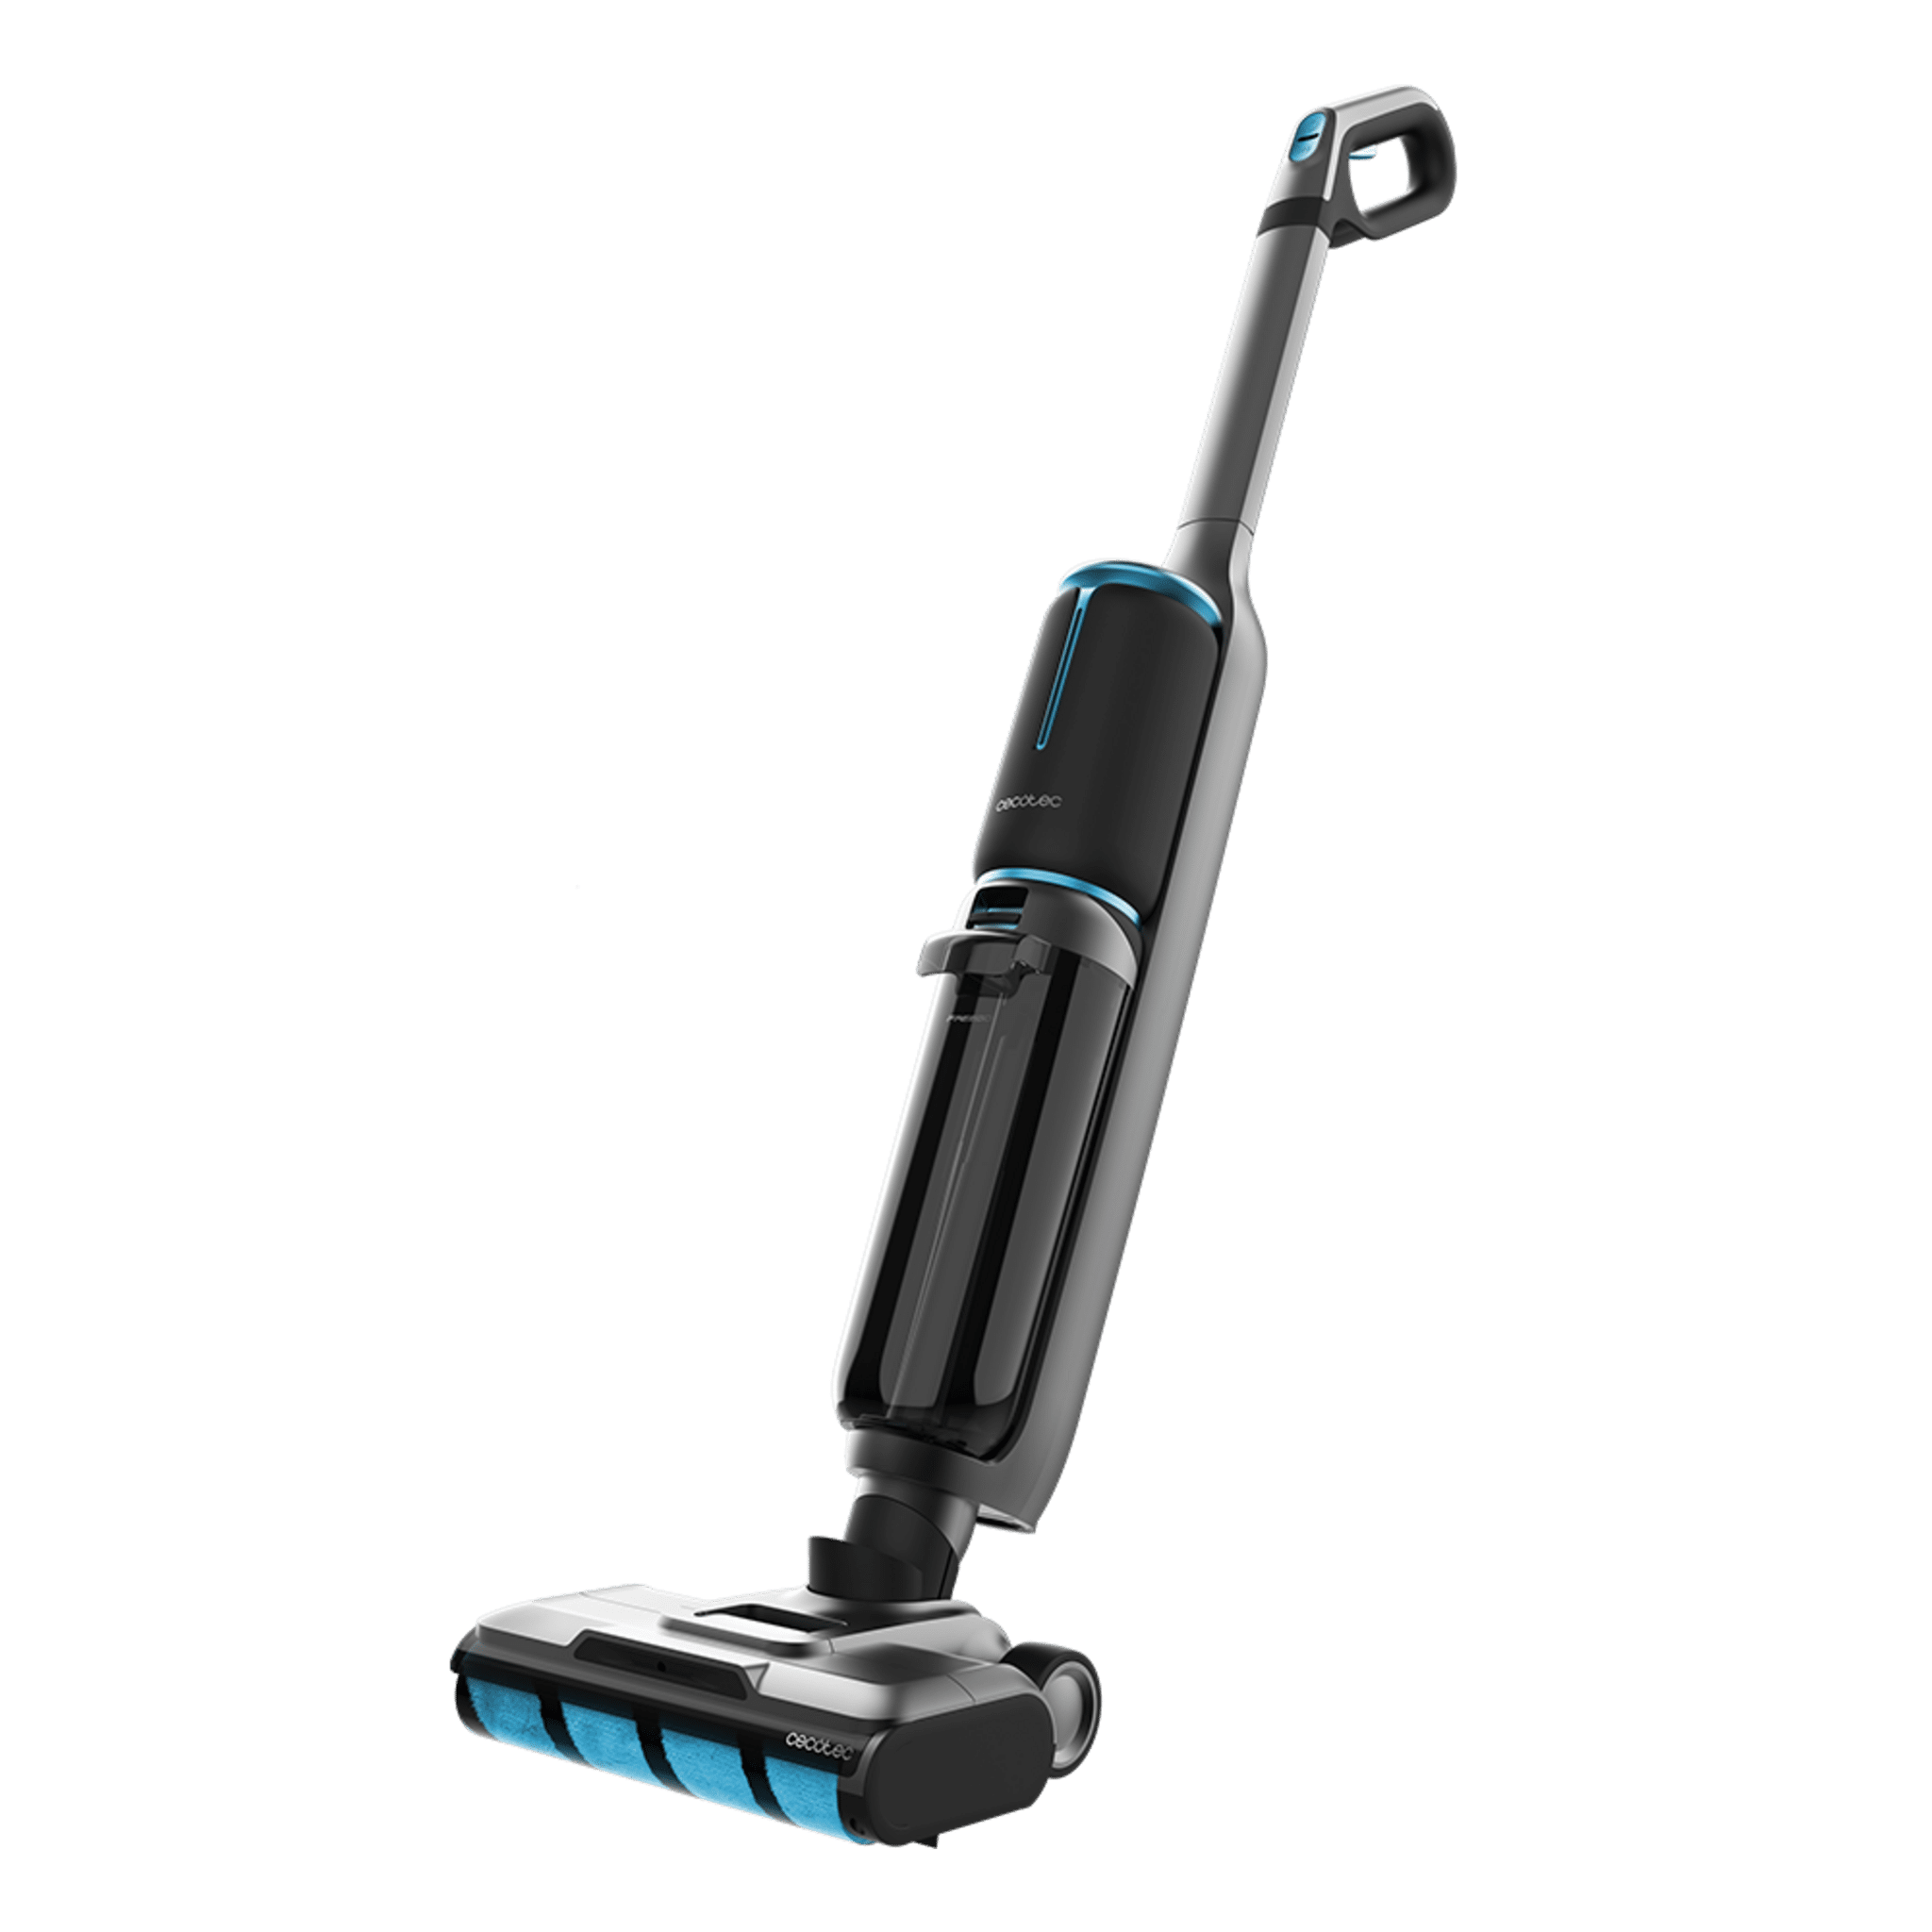 Cecote FreeGo Wash&Vacuum Spray Aspirador/Fregona Eléctrica sin